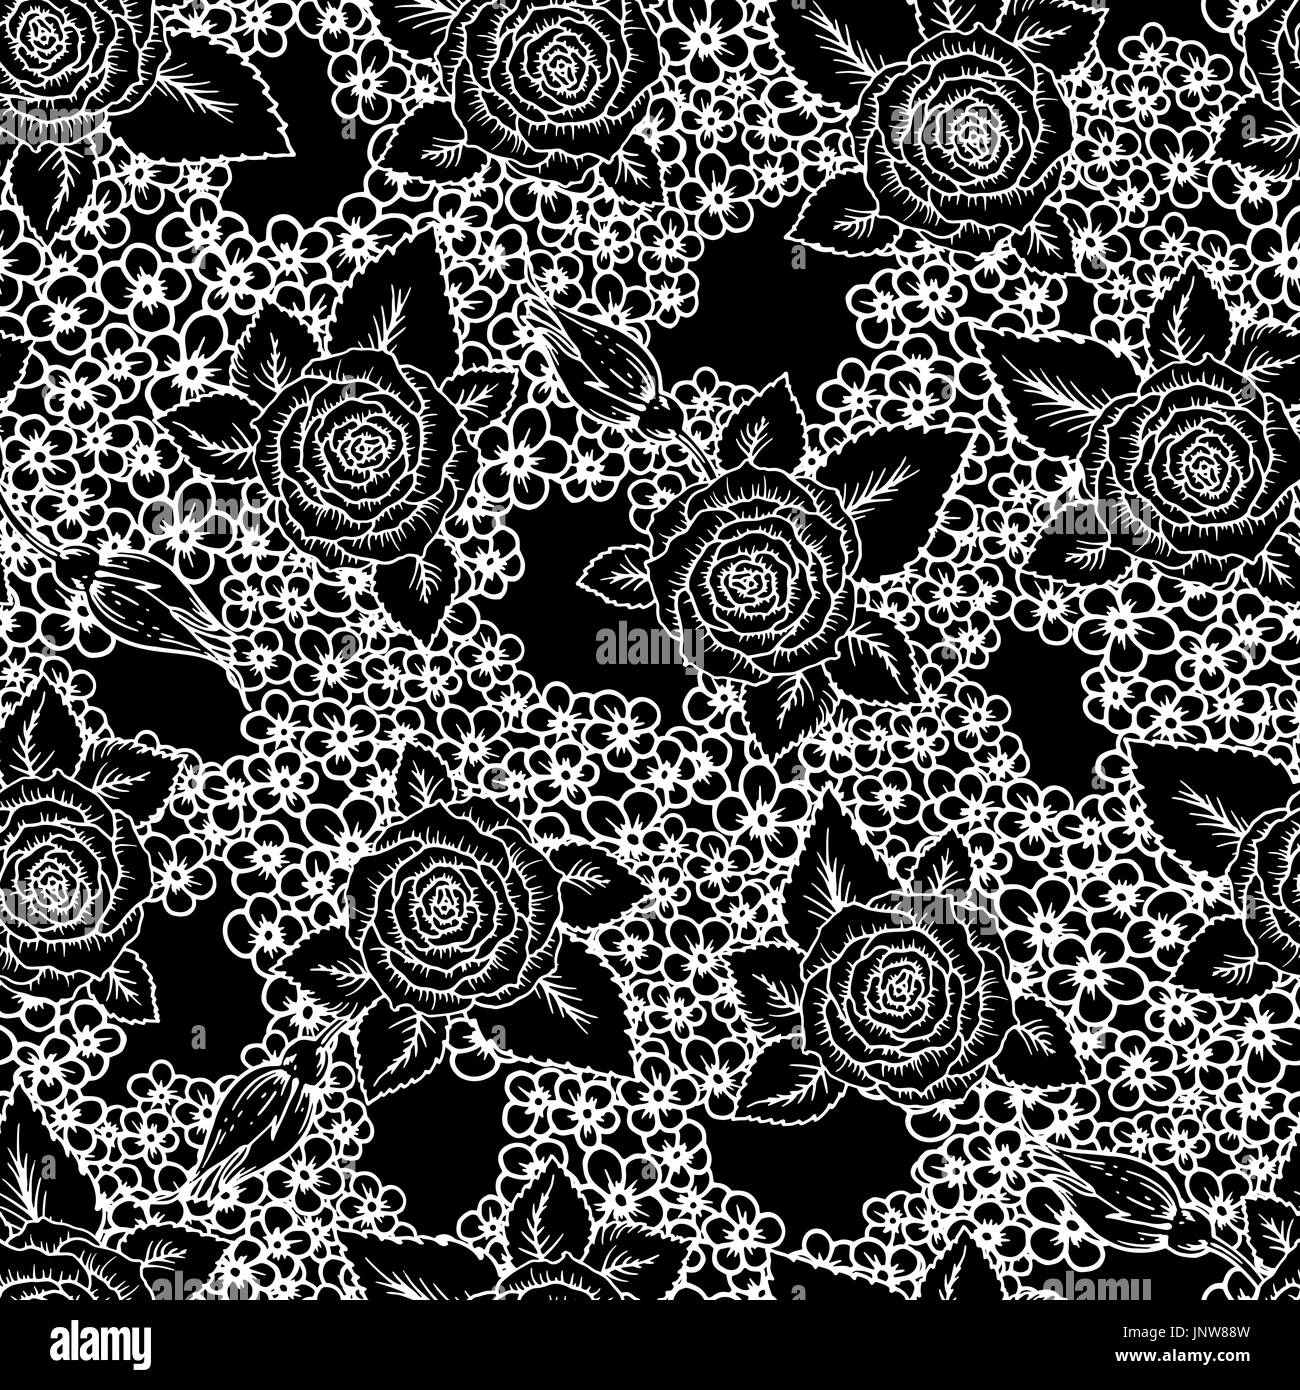 Floral frame. Hand gezeichnete Skizze von Rosen, Blätter und Zweige  Detaillierte vintage Botanischen illuatration. Schwarze silhouette  isollated auf weißem Hintergrund Stock-Vektorgrafik - Alamy